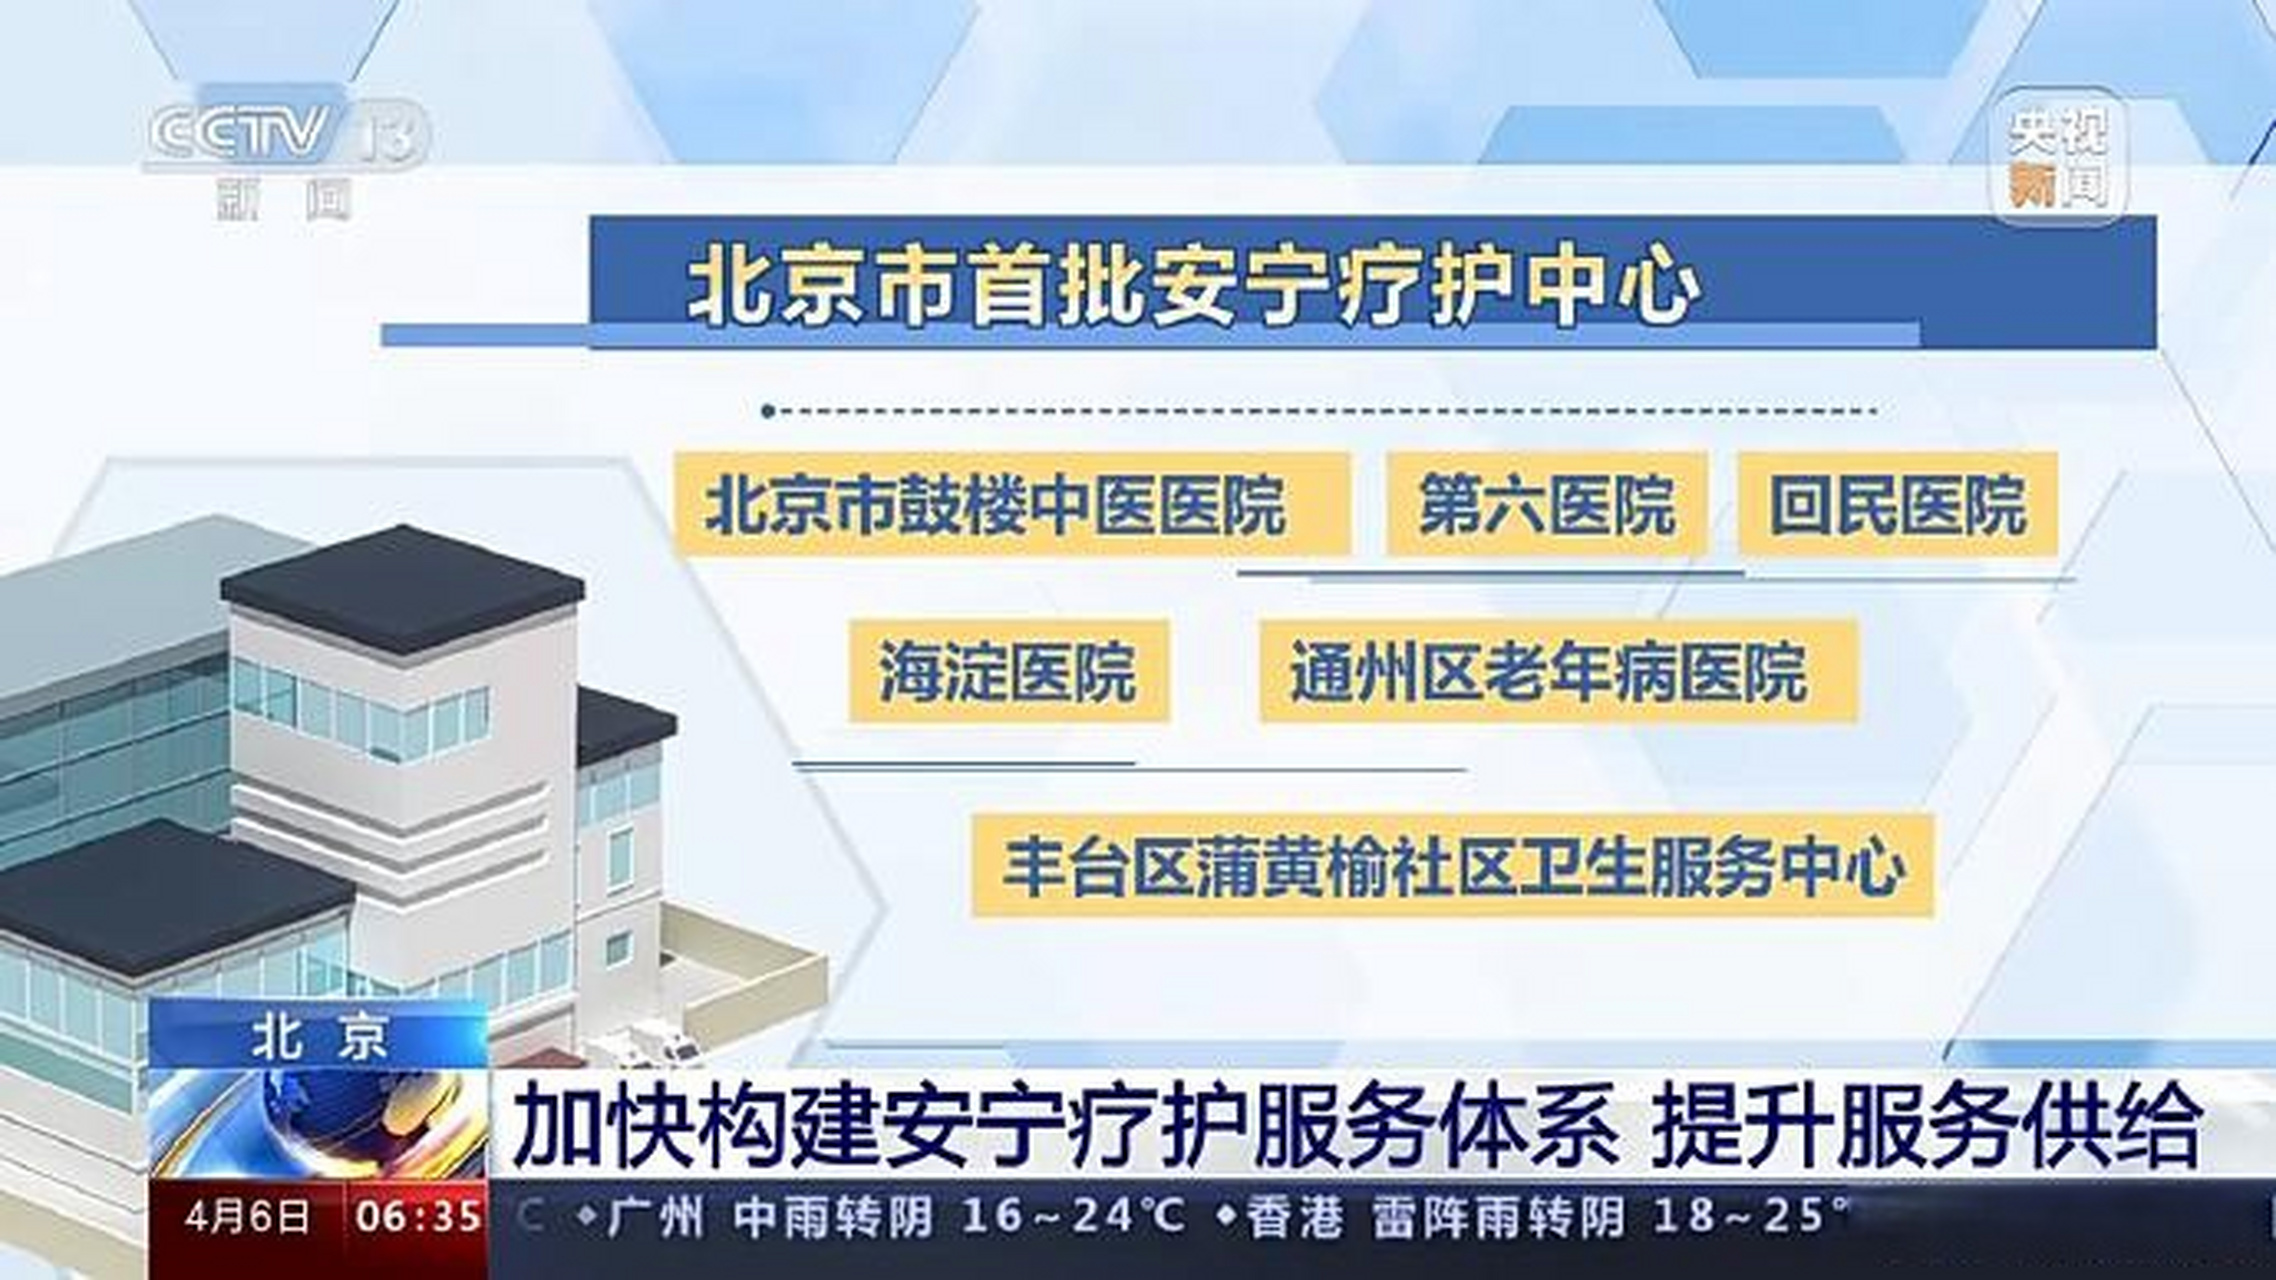 【北京首批安宁疗护中心通过验收】安宁疗护是指以疾病终末期或老年